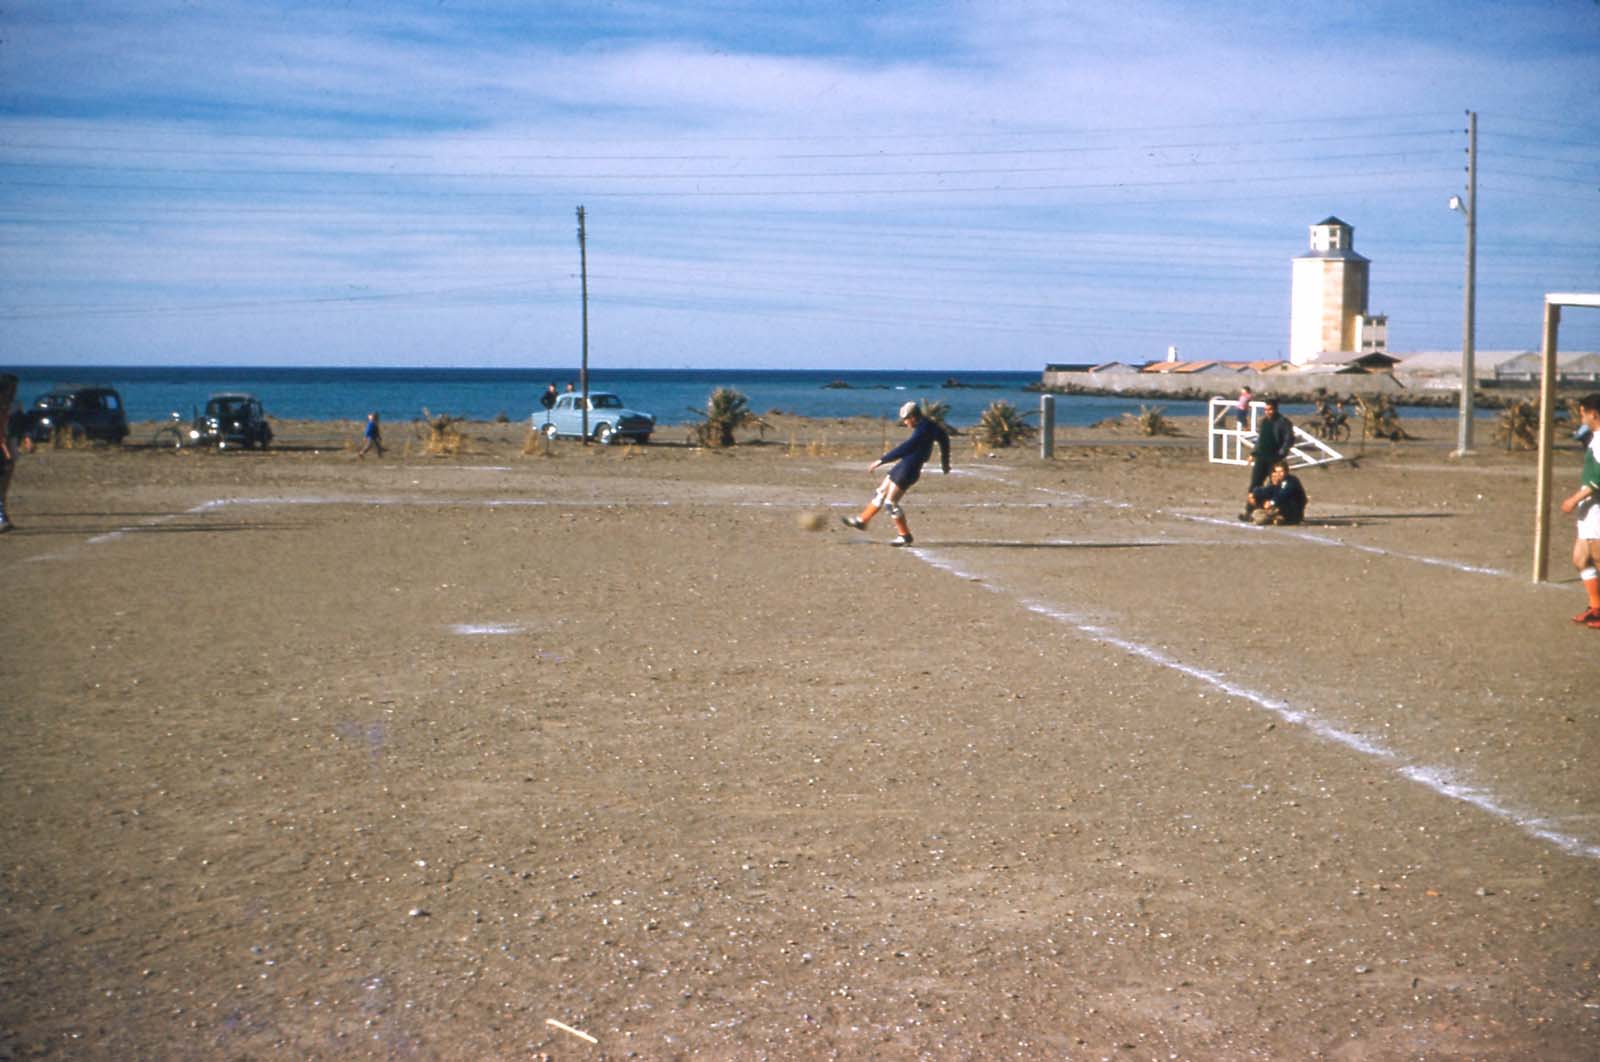 Le Stade du Port
18 Janvier 1959